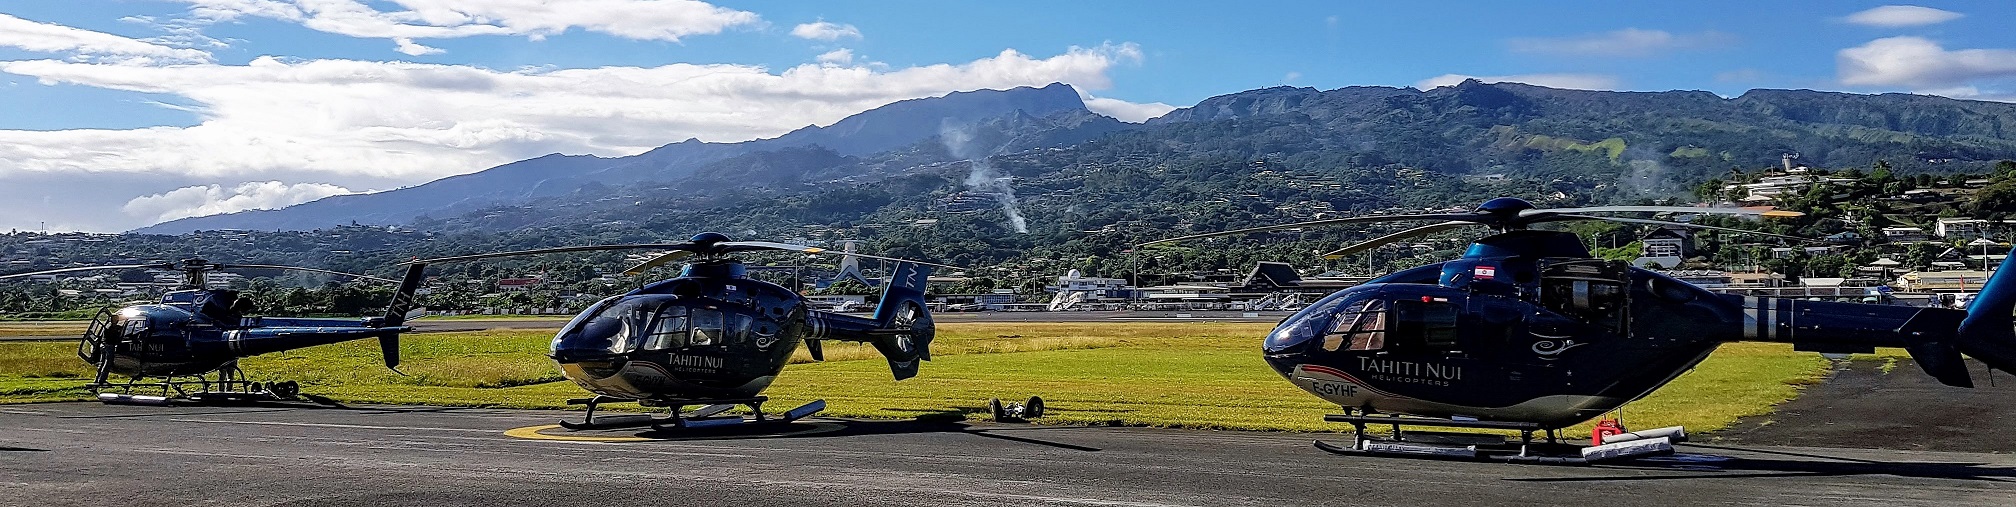 Dans les locaux de Tahiti Nui Hélicopters, sur la zone de l'aéroport de Tahiti Faa'a, trois aéronefs sont déjà arrivés. Le quatrième arrivera fin octobre.